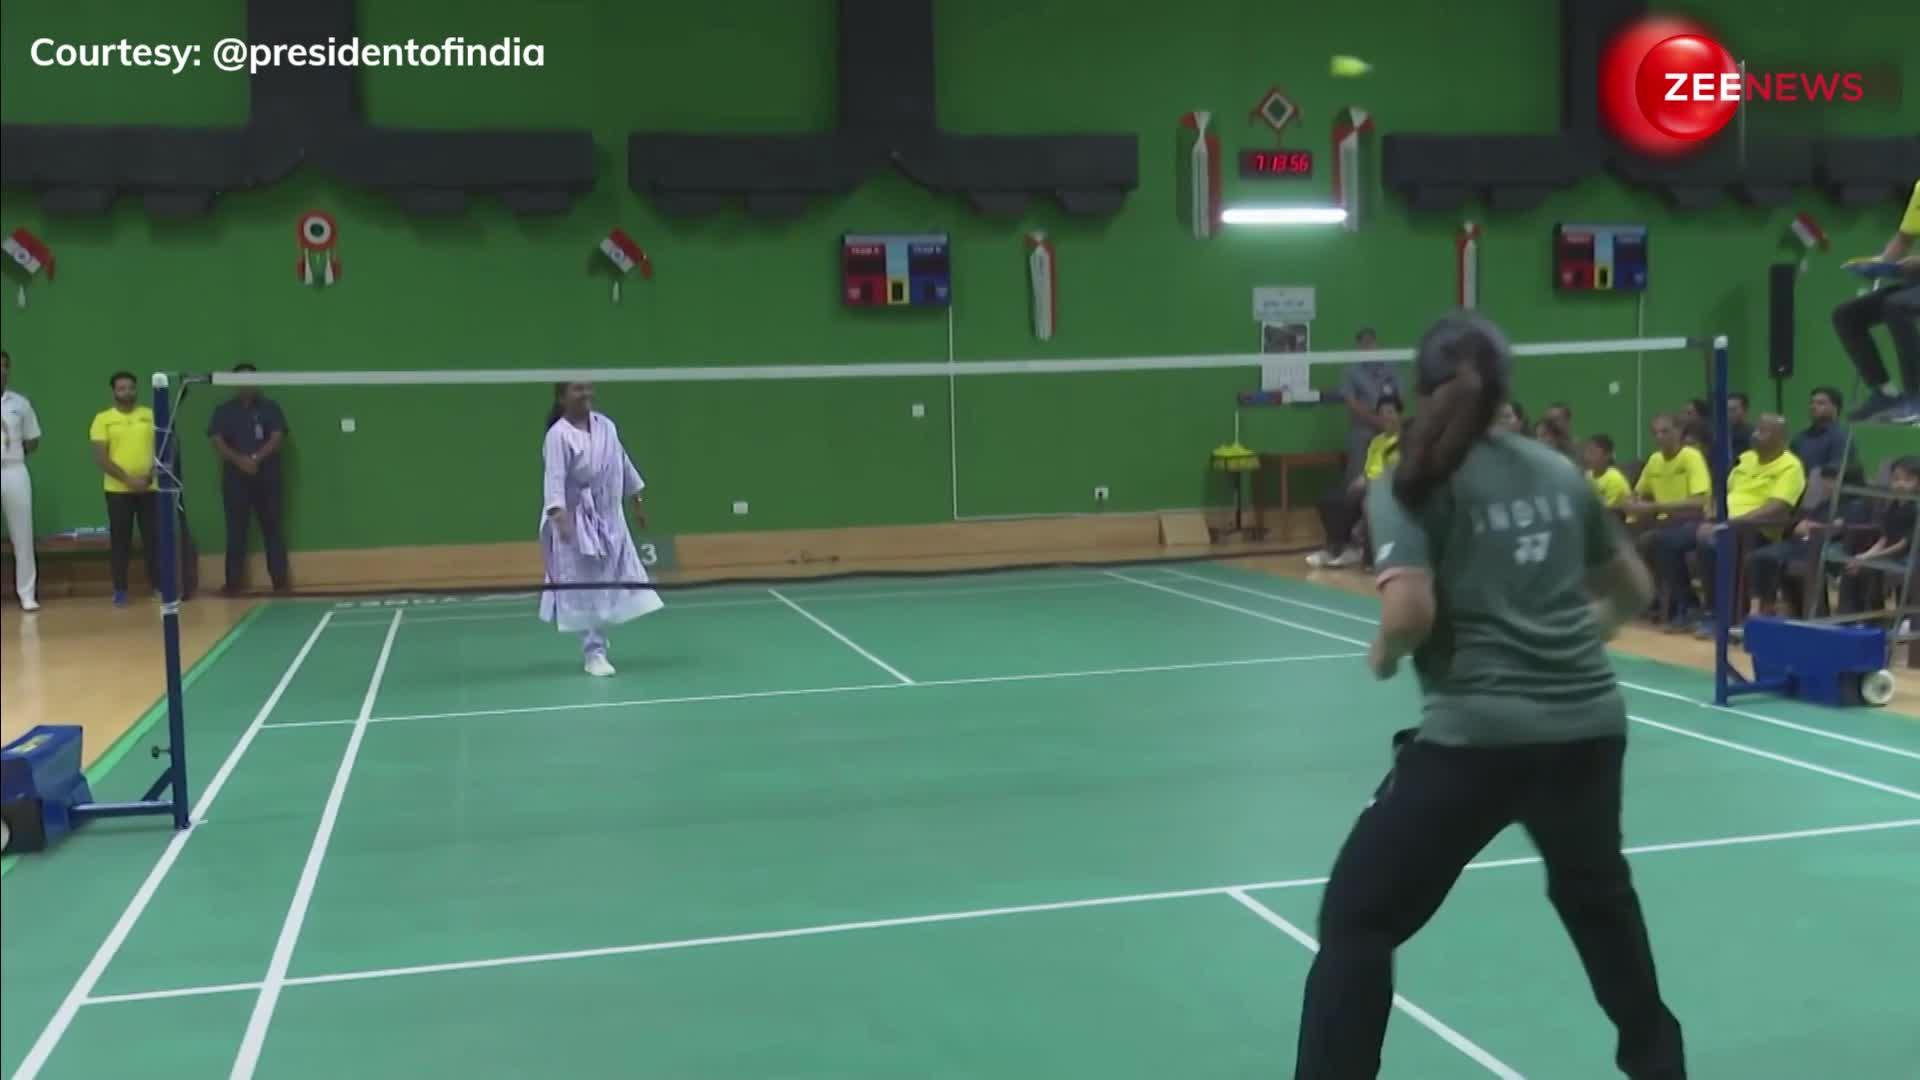 राष्ट्रपति द्रौपदी मुर्मू ने साइना नेहवाल के साथ खेला बैडमिंटन, सामने आया वीडियो